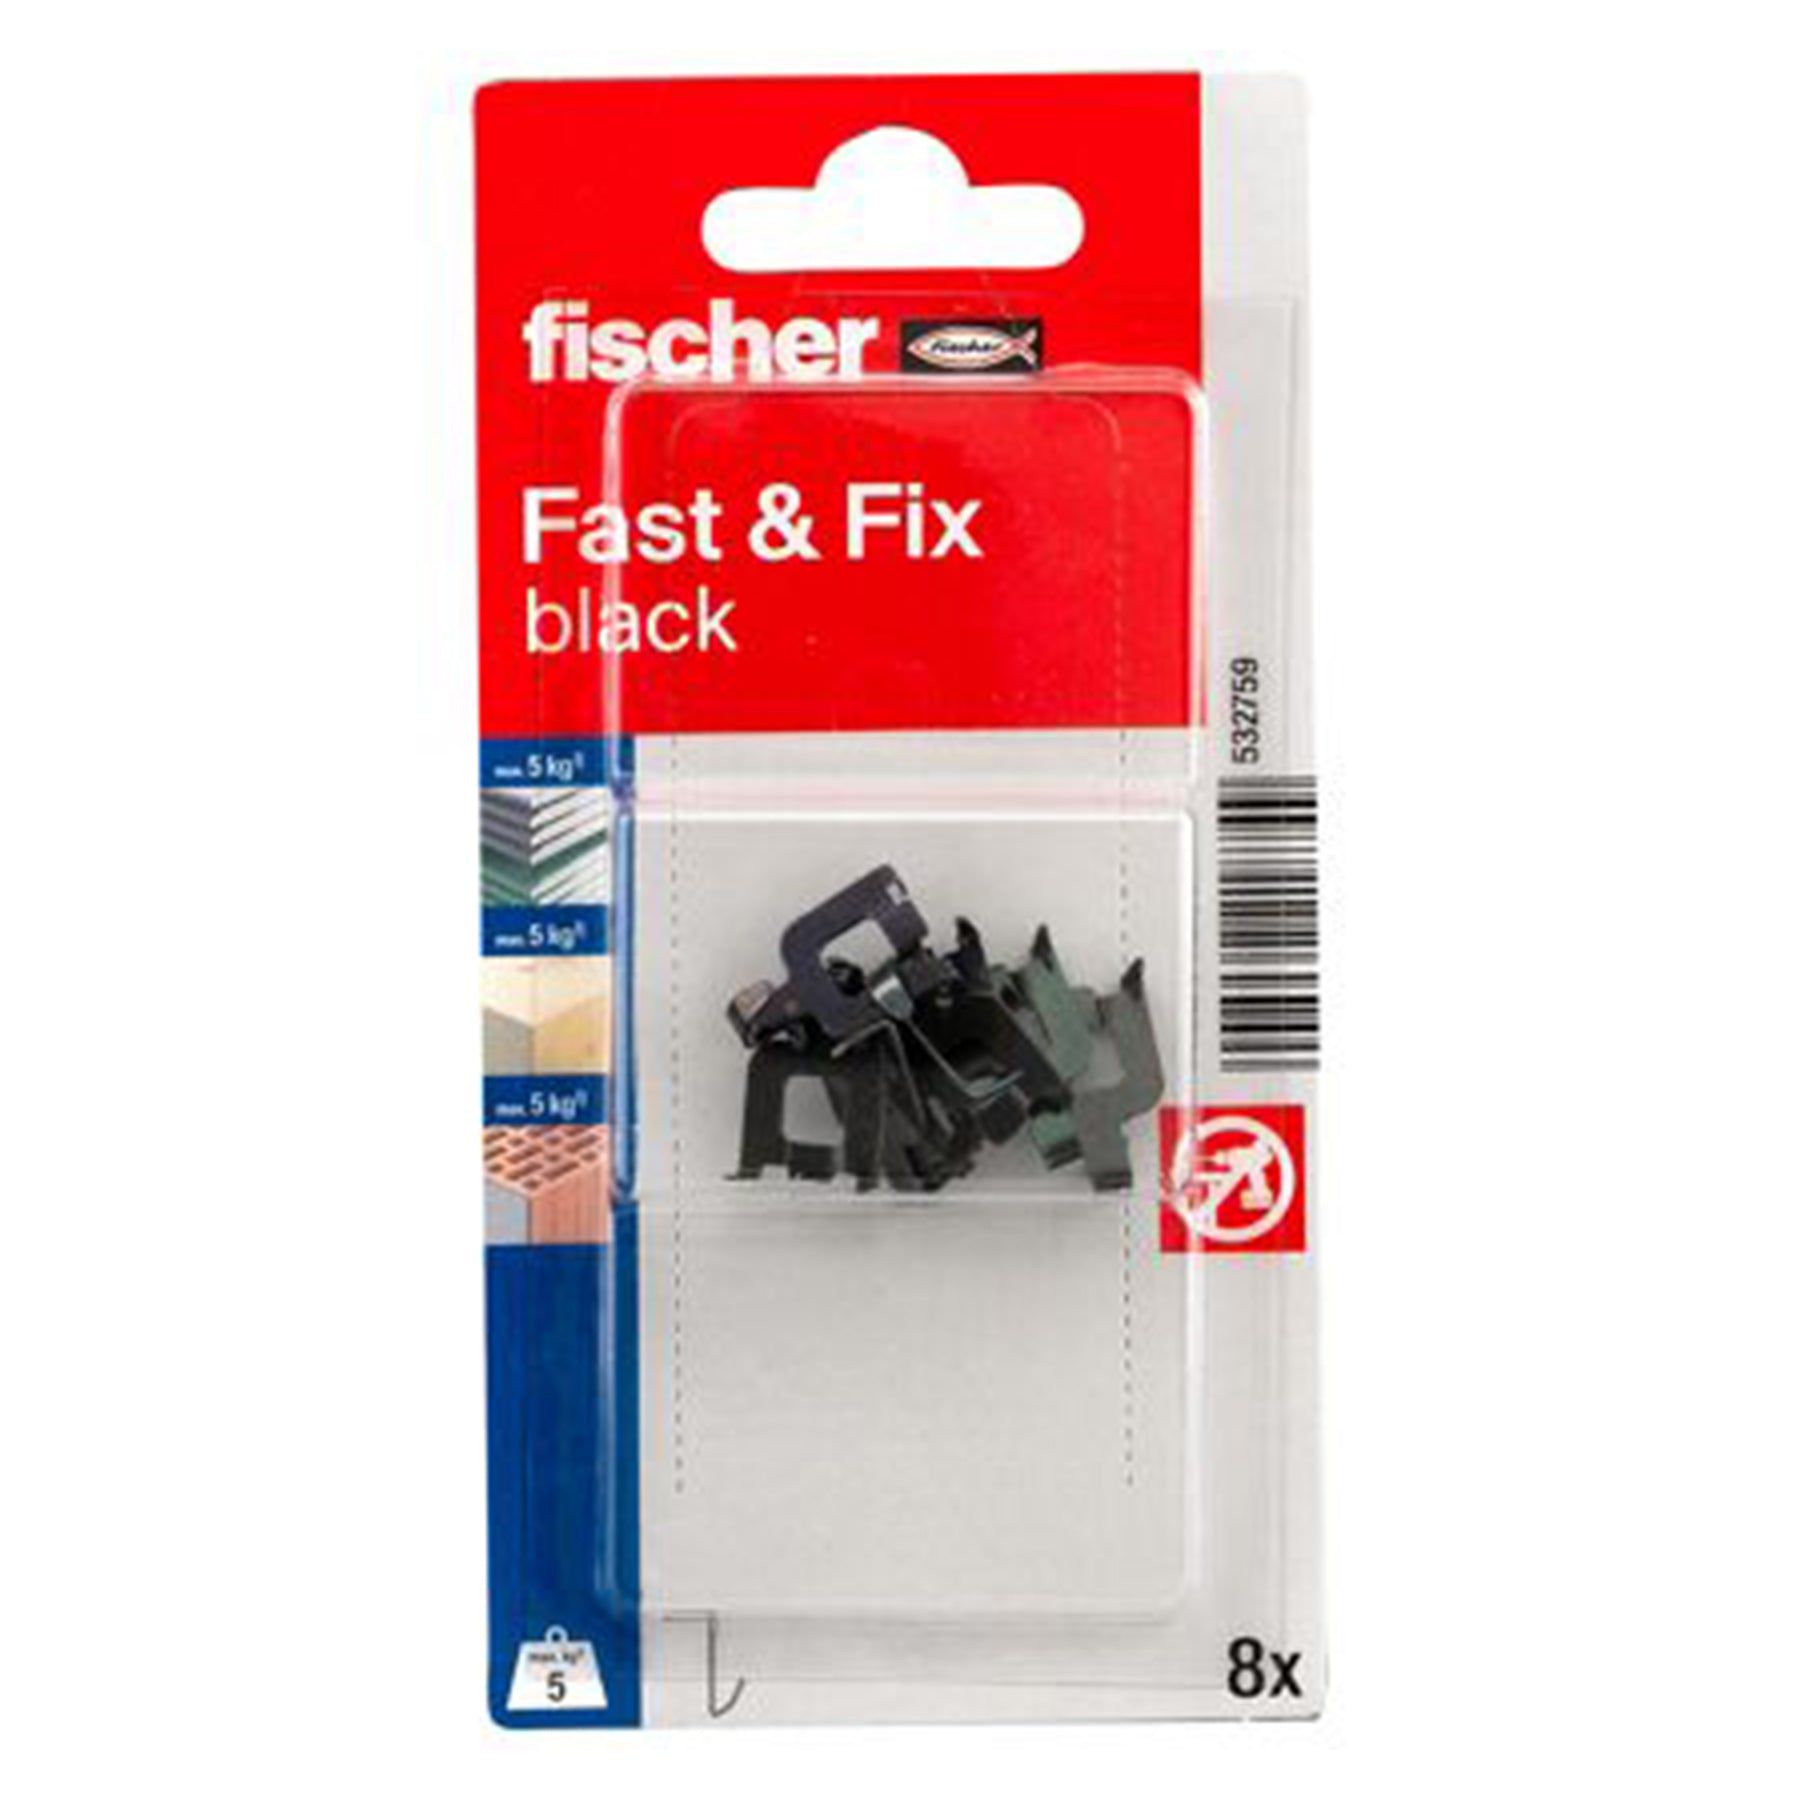 Fast & Fix black SB-card - Black